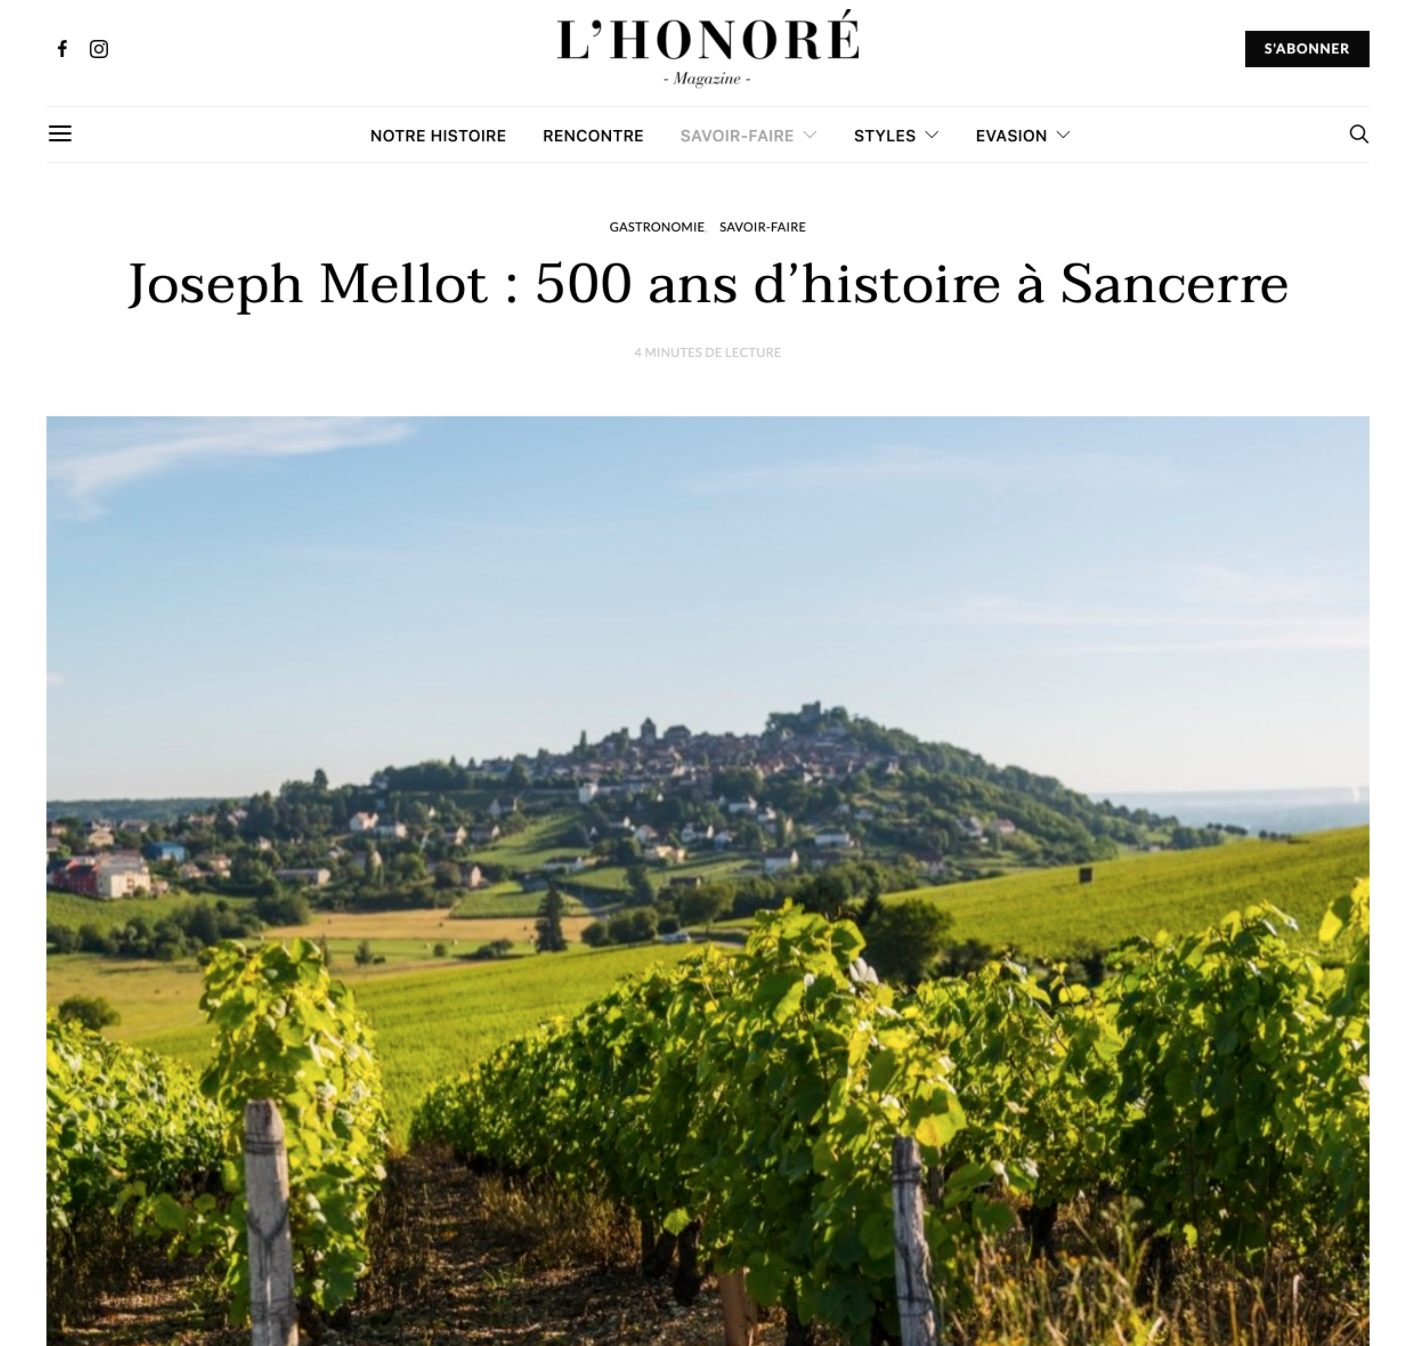 L’Honoré Magazine – Joseph Mellot